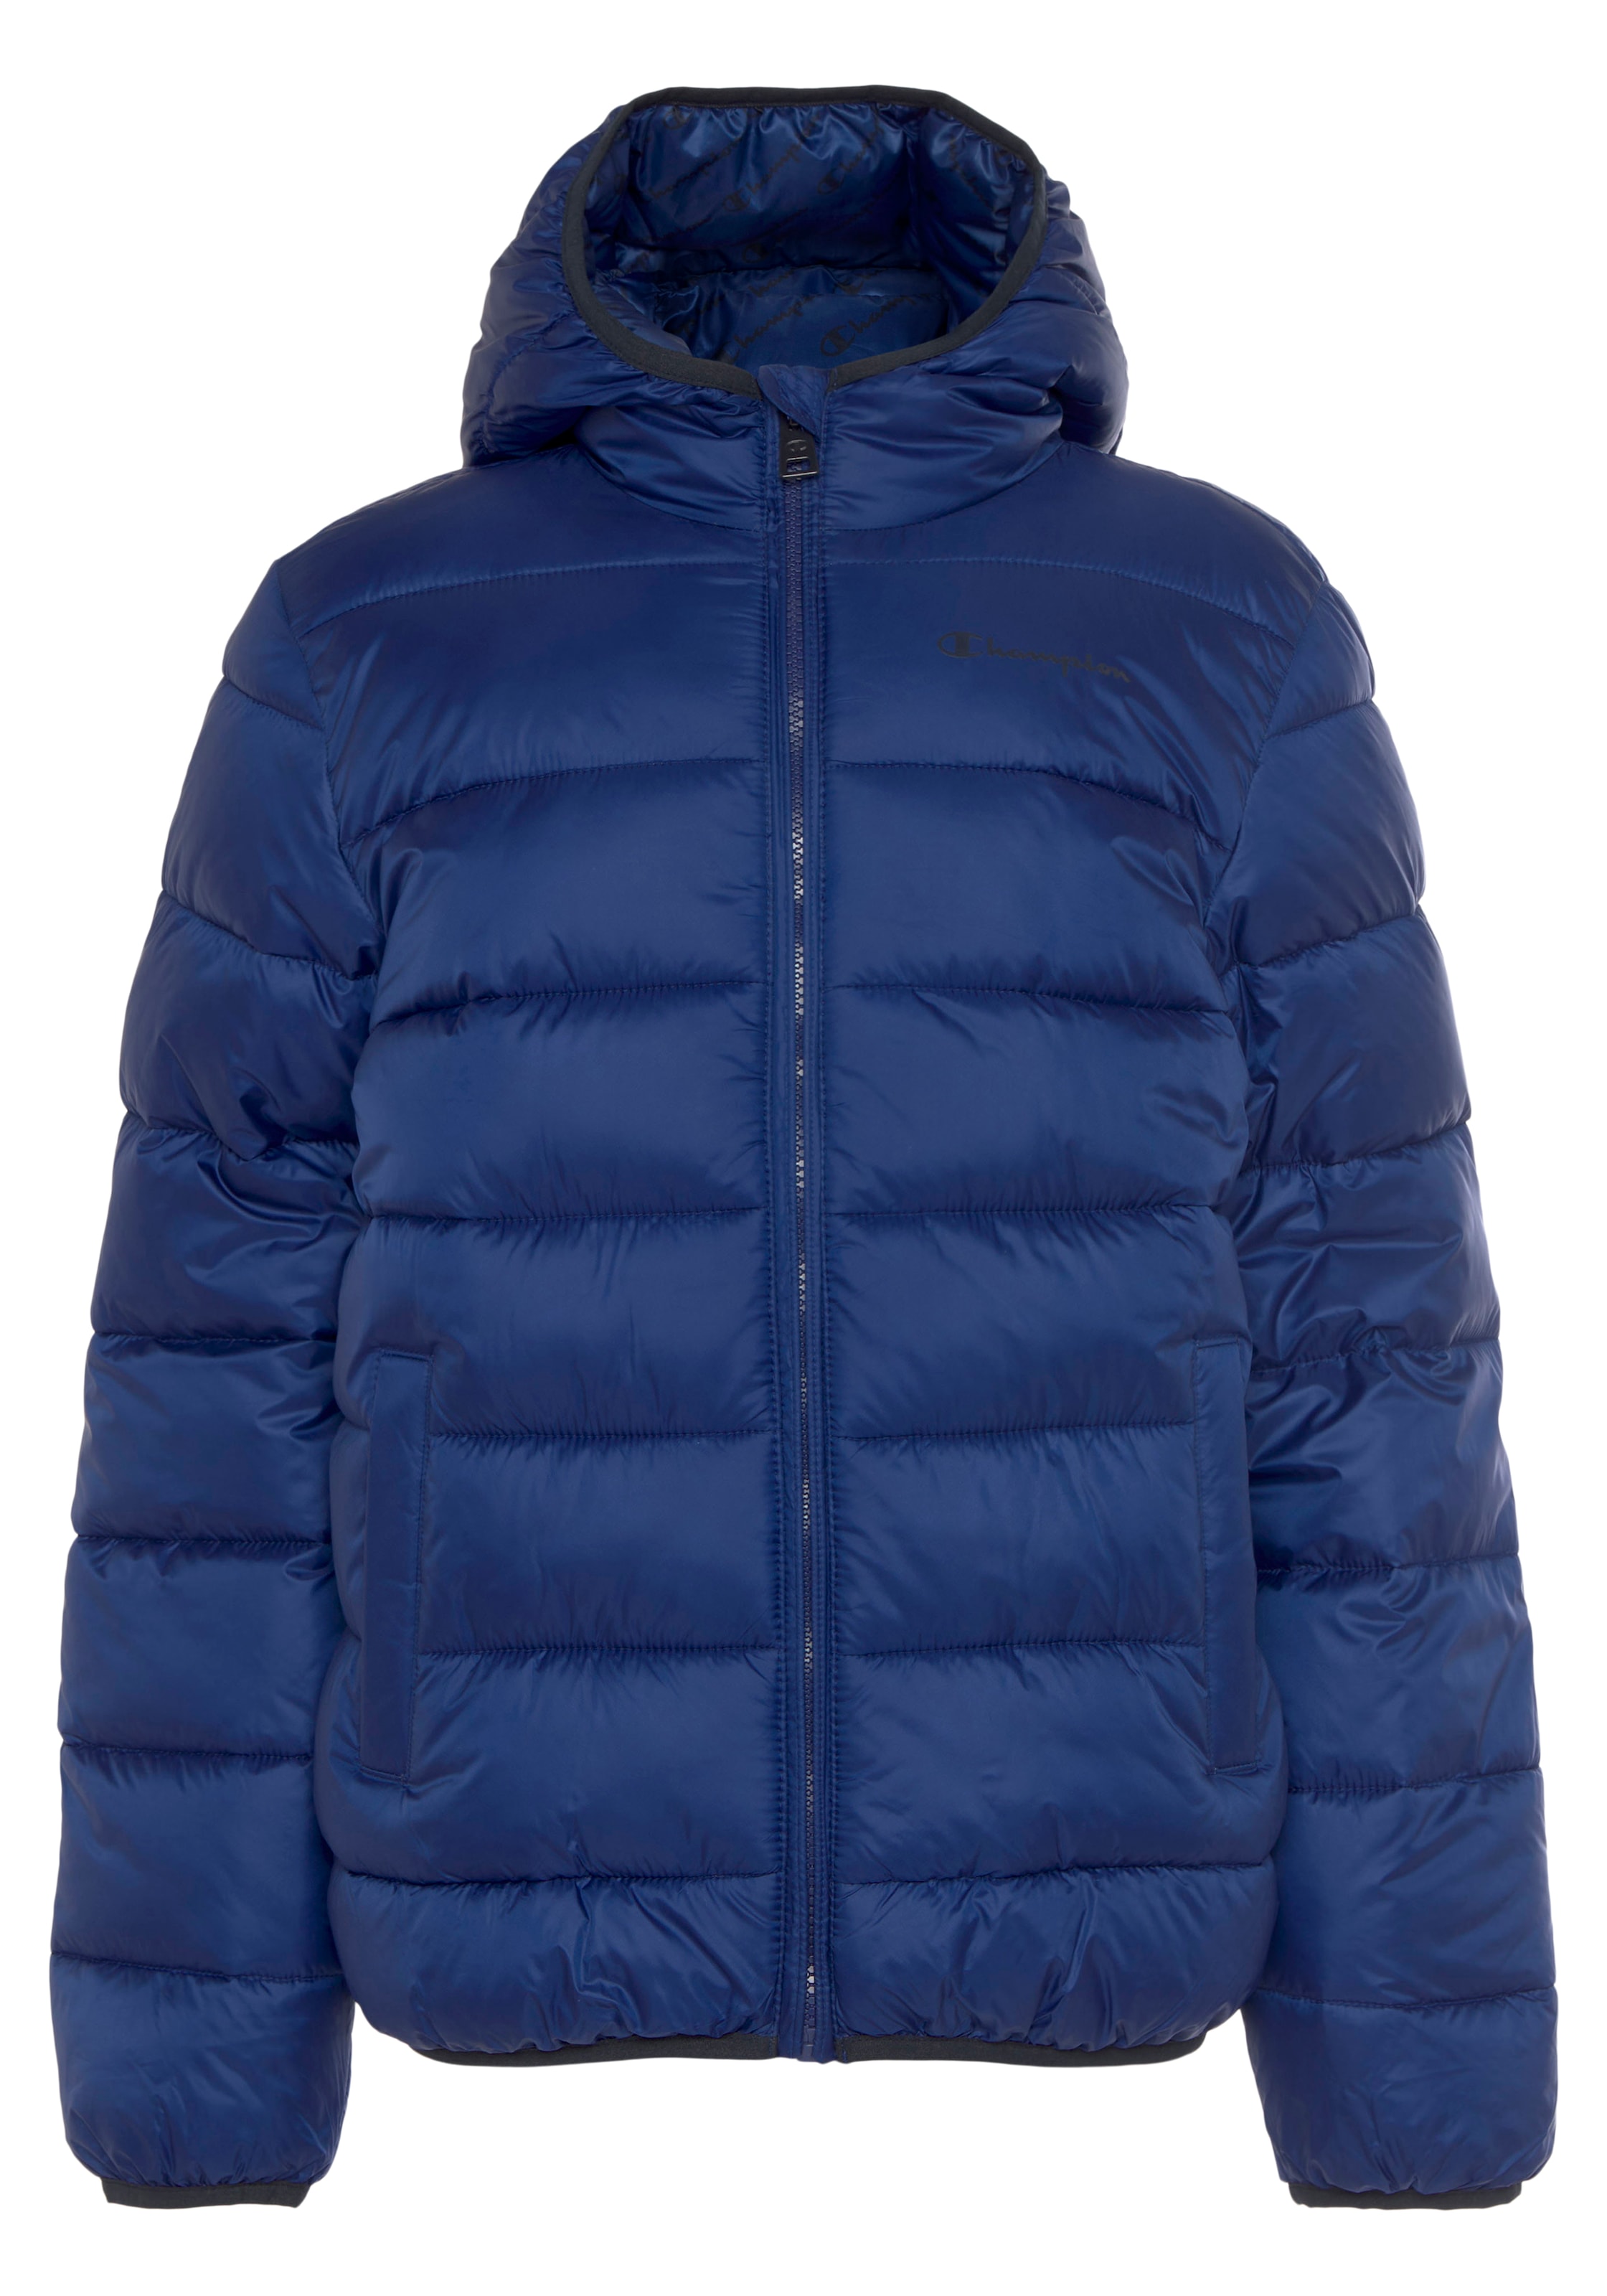 Shop Kinder«, im Champion »Outdoor Steppjacke OTTO Online Hooded Jacket Kapuze für mit -